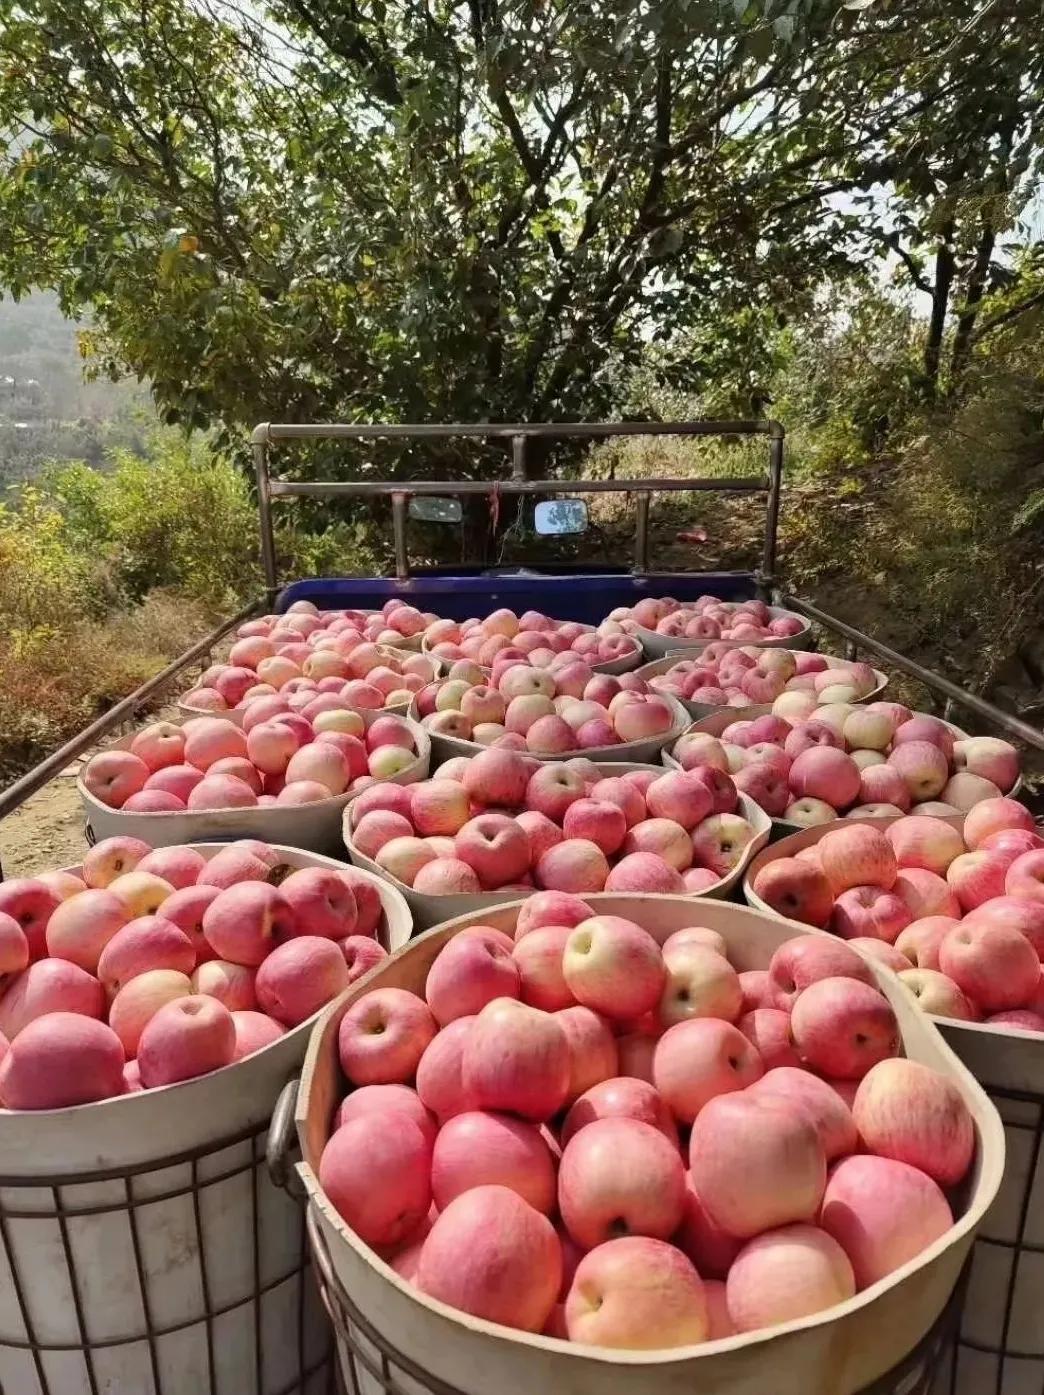 中国苹果第一大县图片